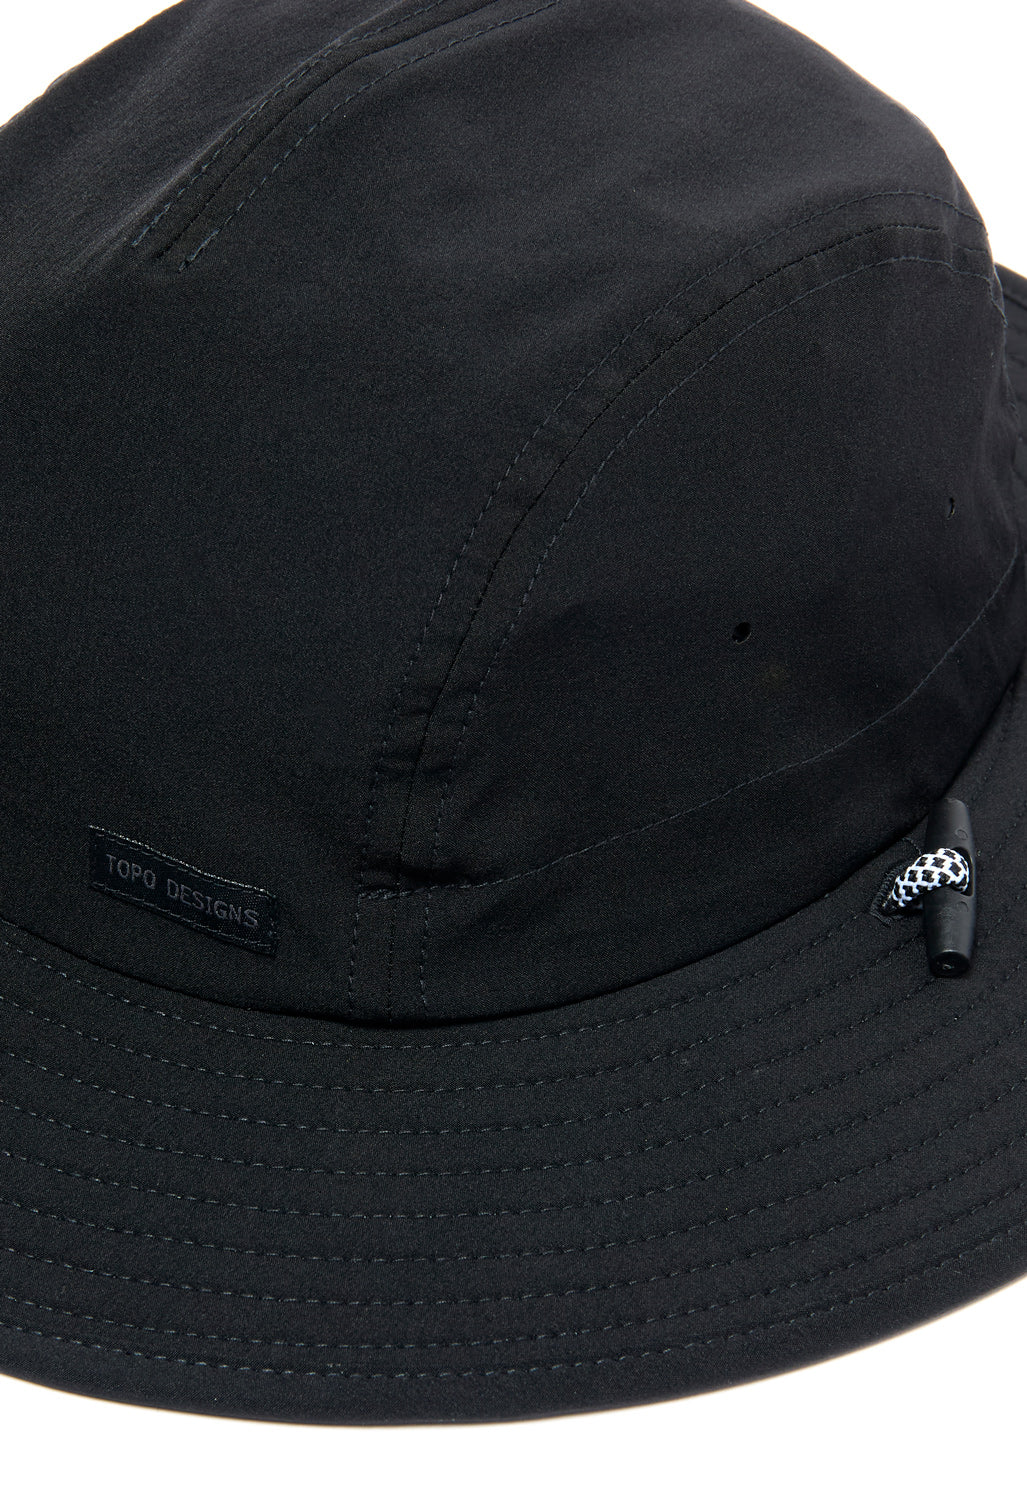 Topo Designs Sun Hat - Black